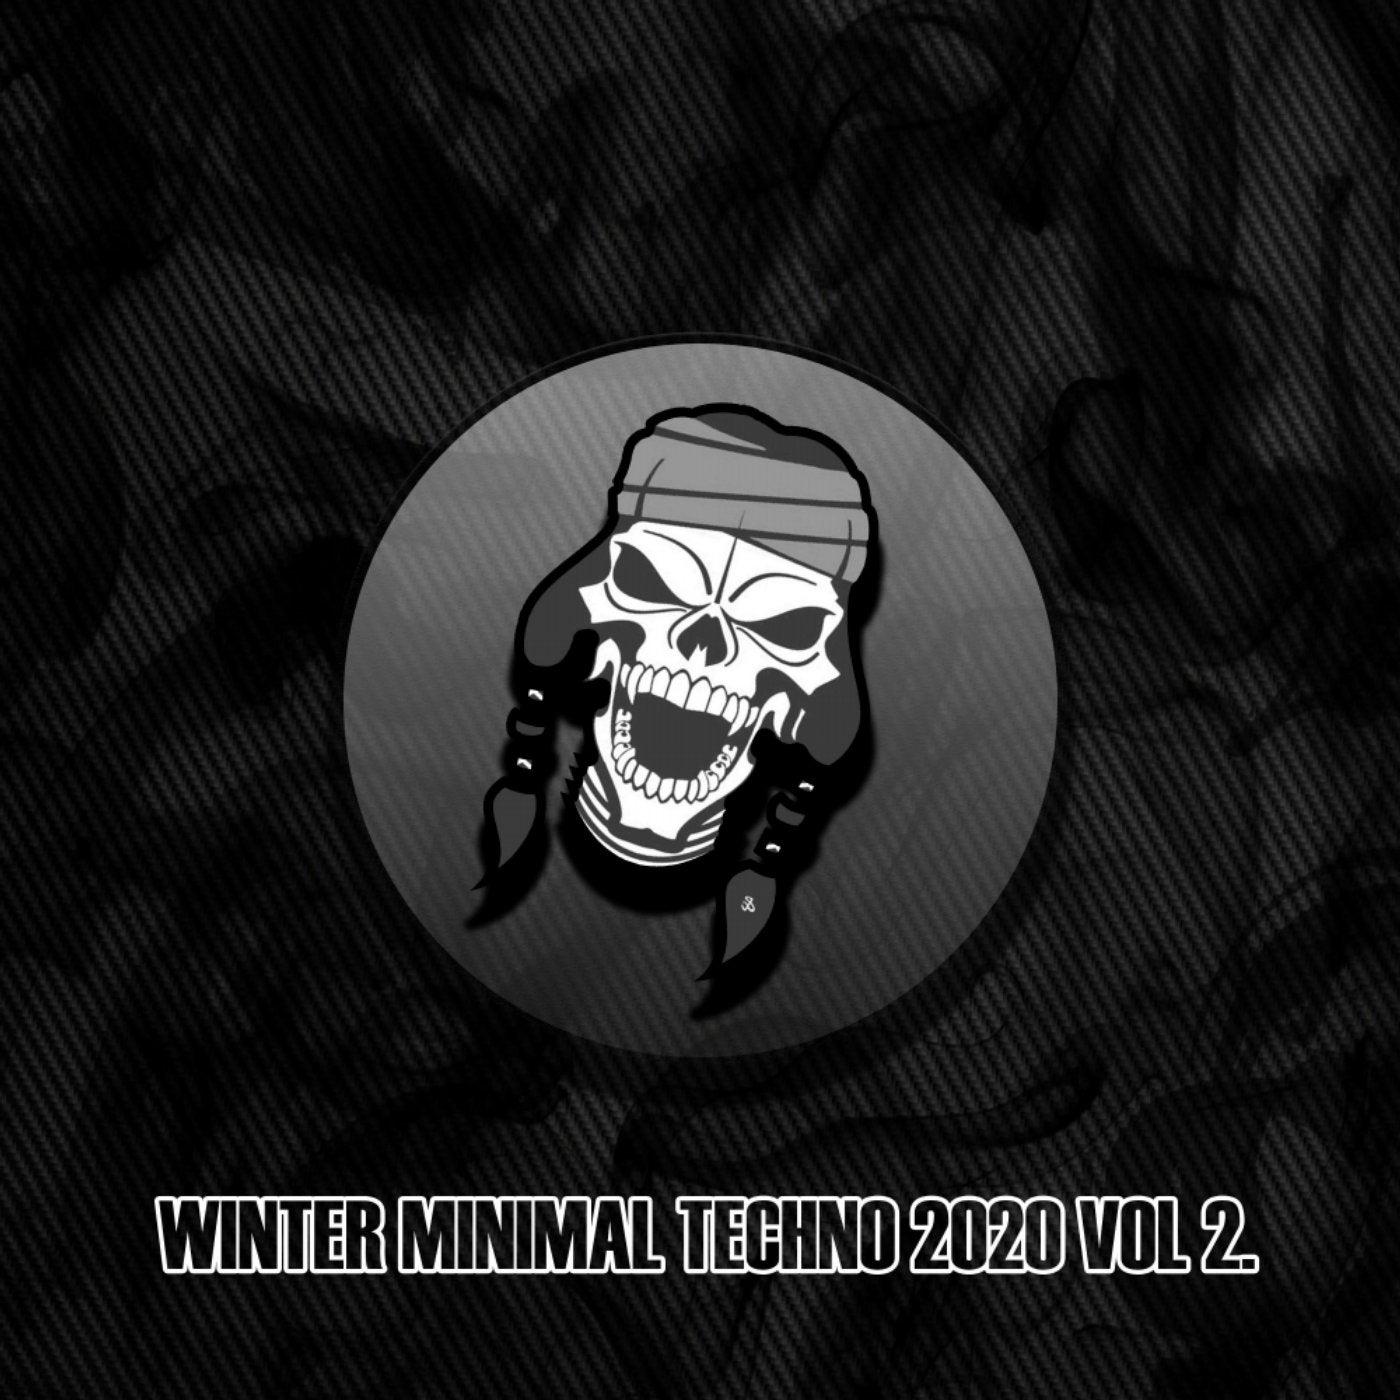 Winter Minimal Techno 2020, Vol. 2